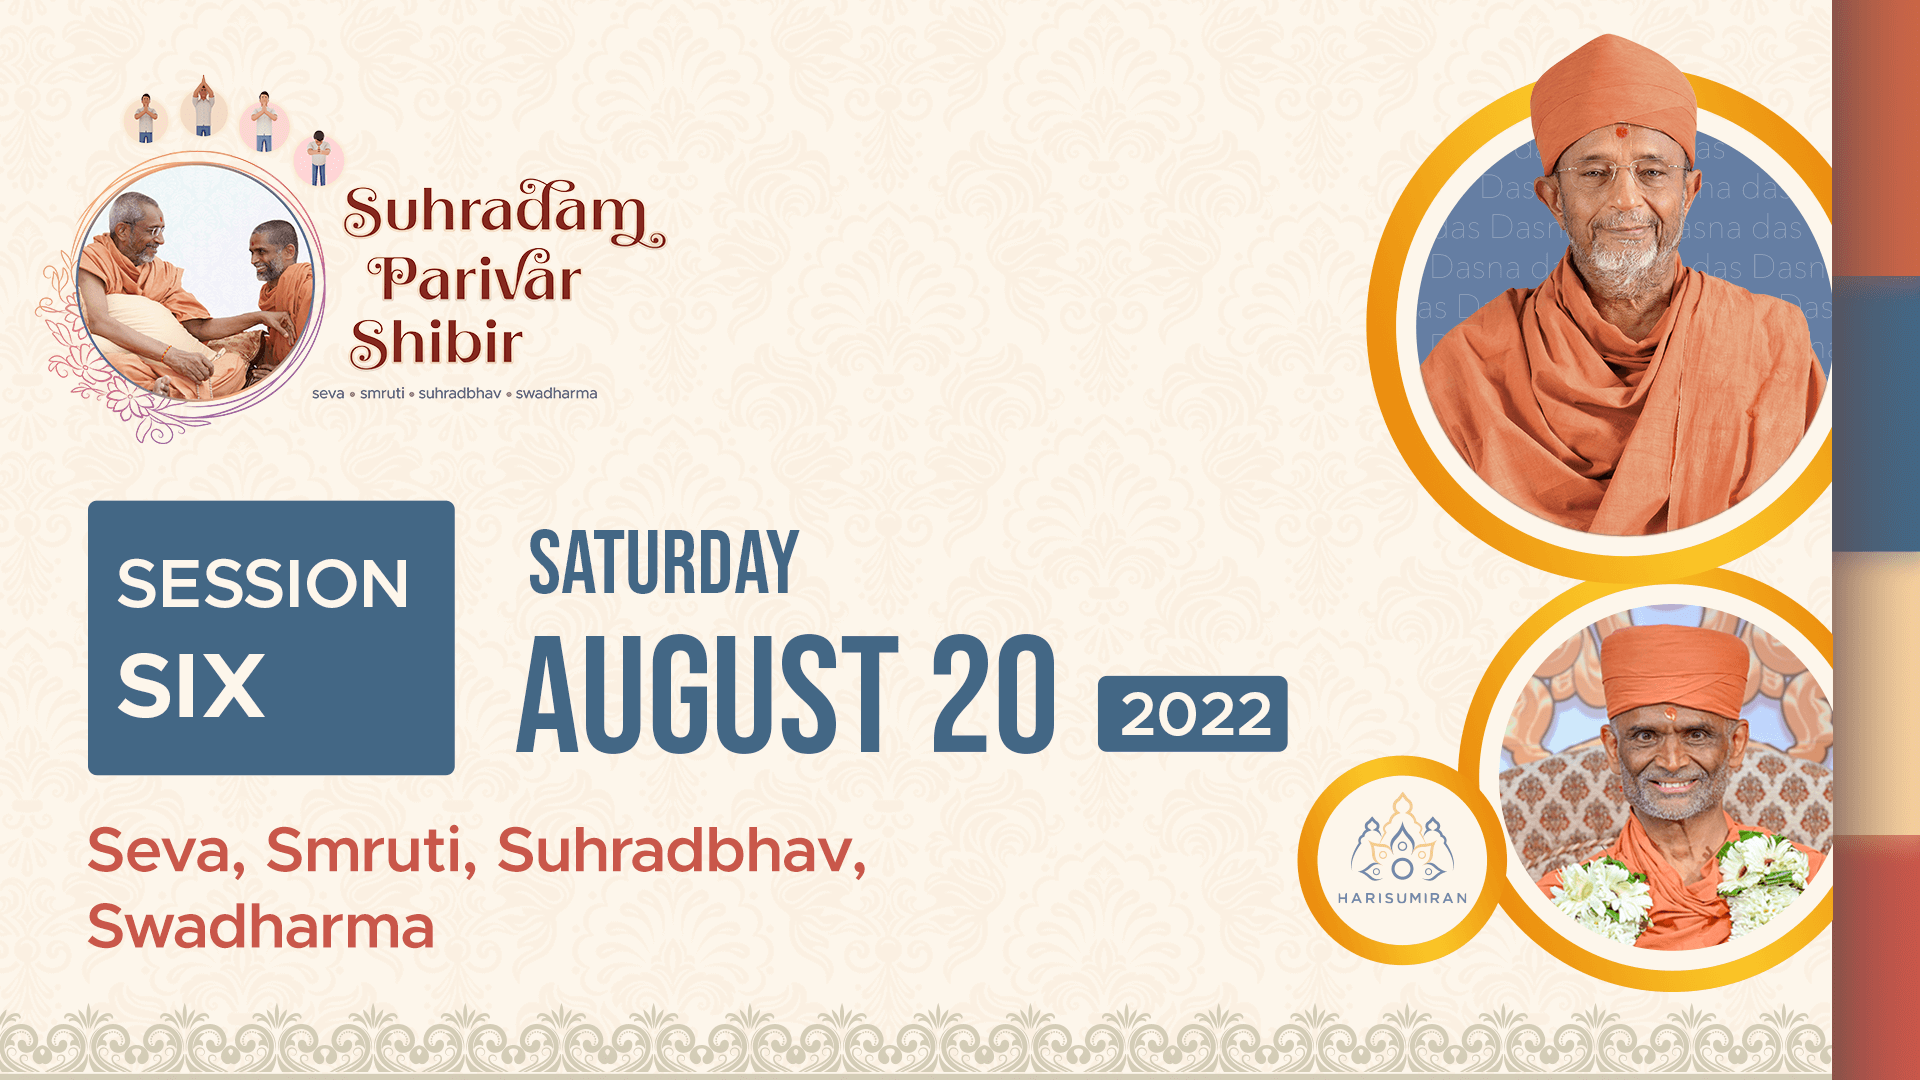 Suhradam Parivar Shibir 2022 | Session 6